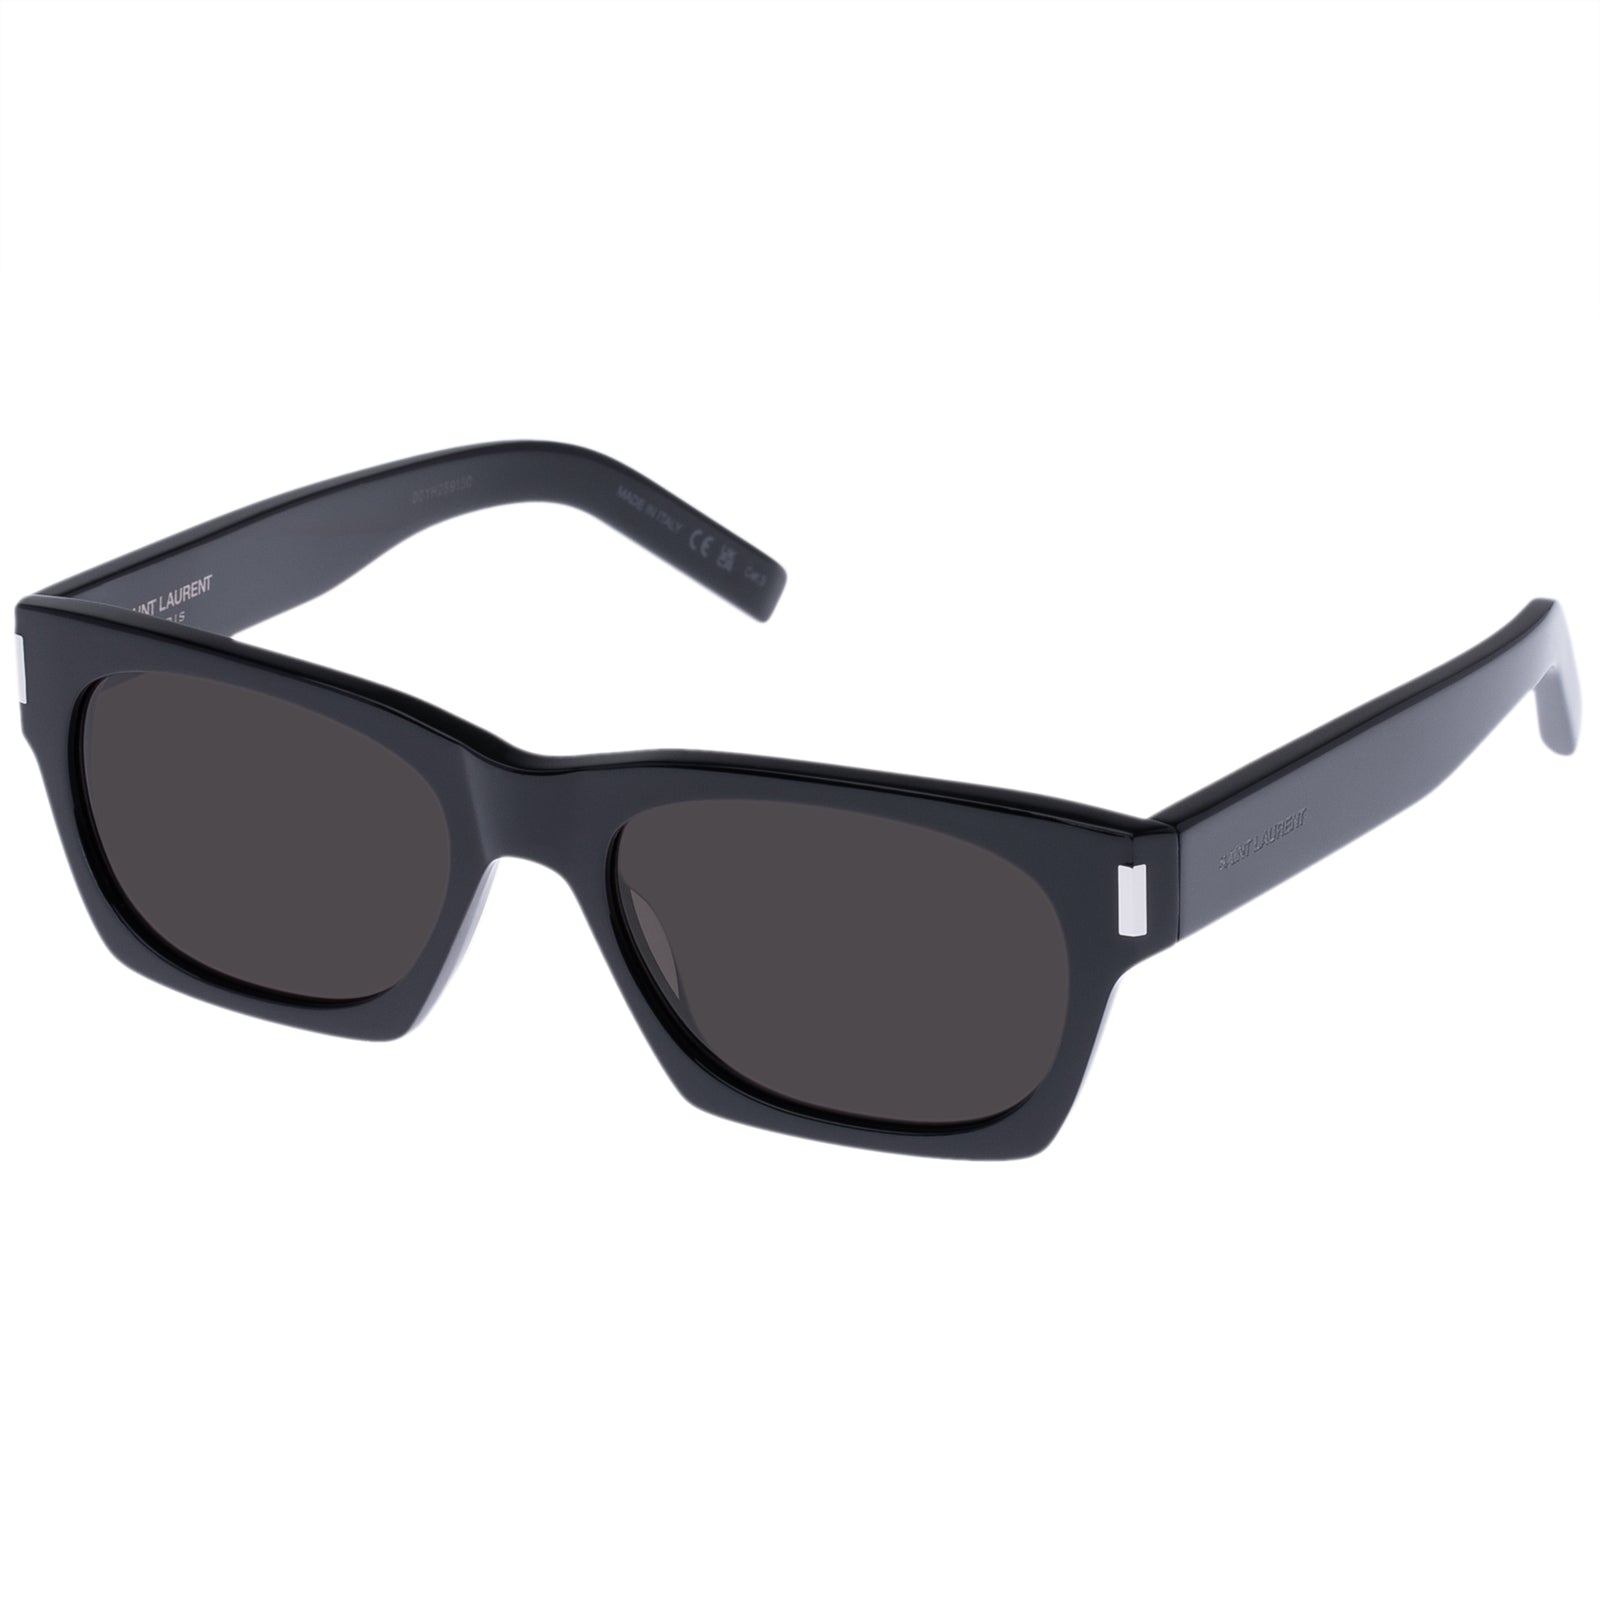 SAINT LAURENT Sunglasses - SUNGLASS BAR - YSL Sunglasses